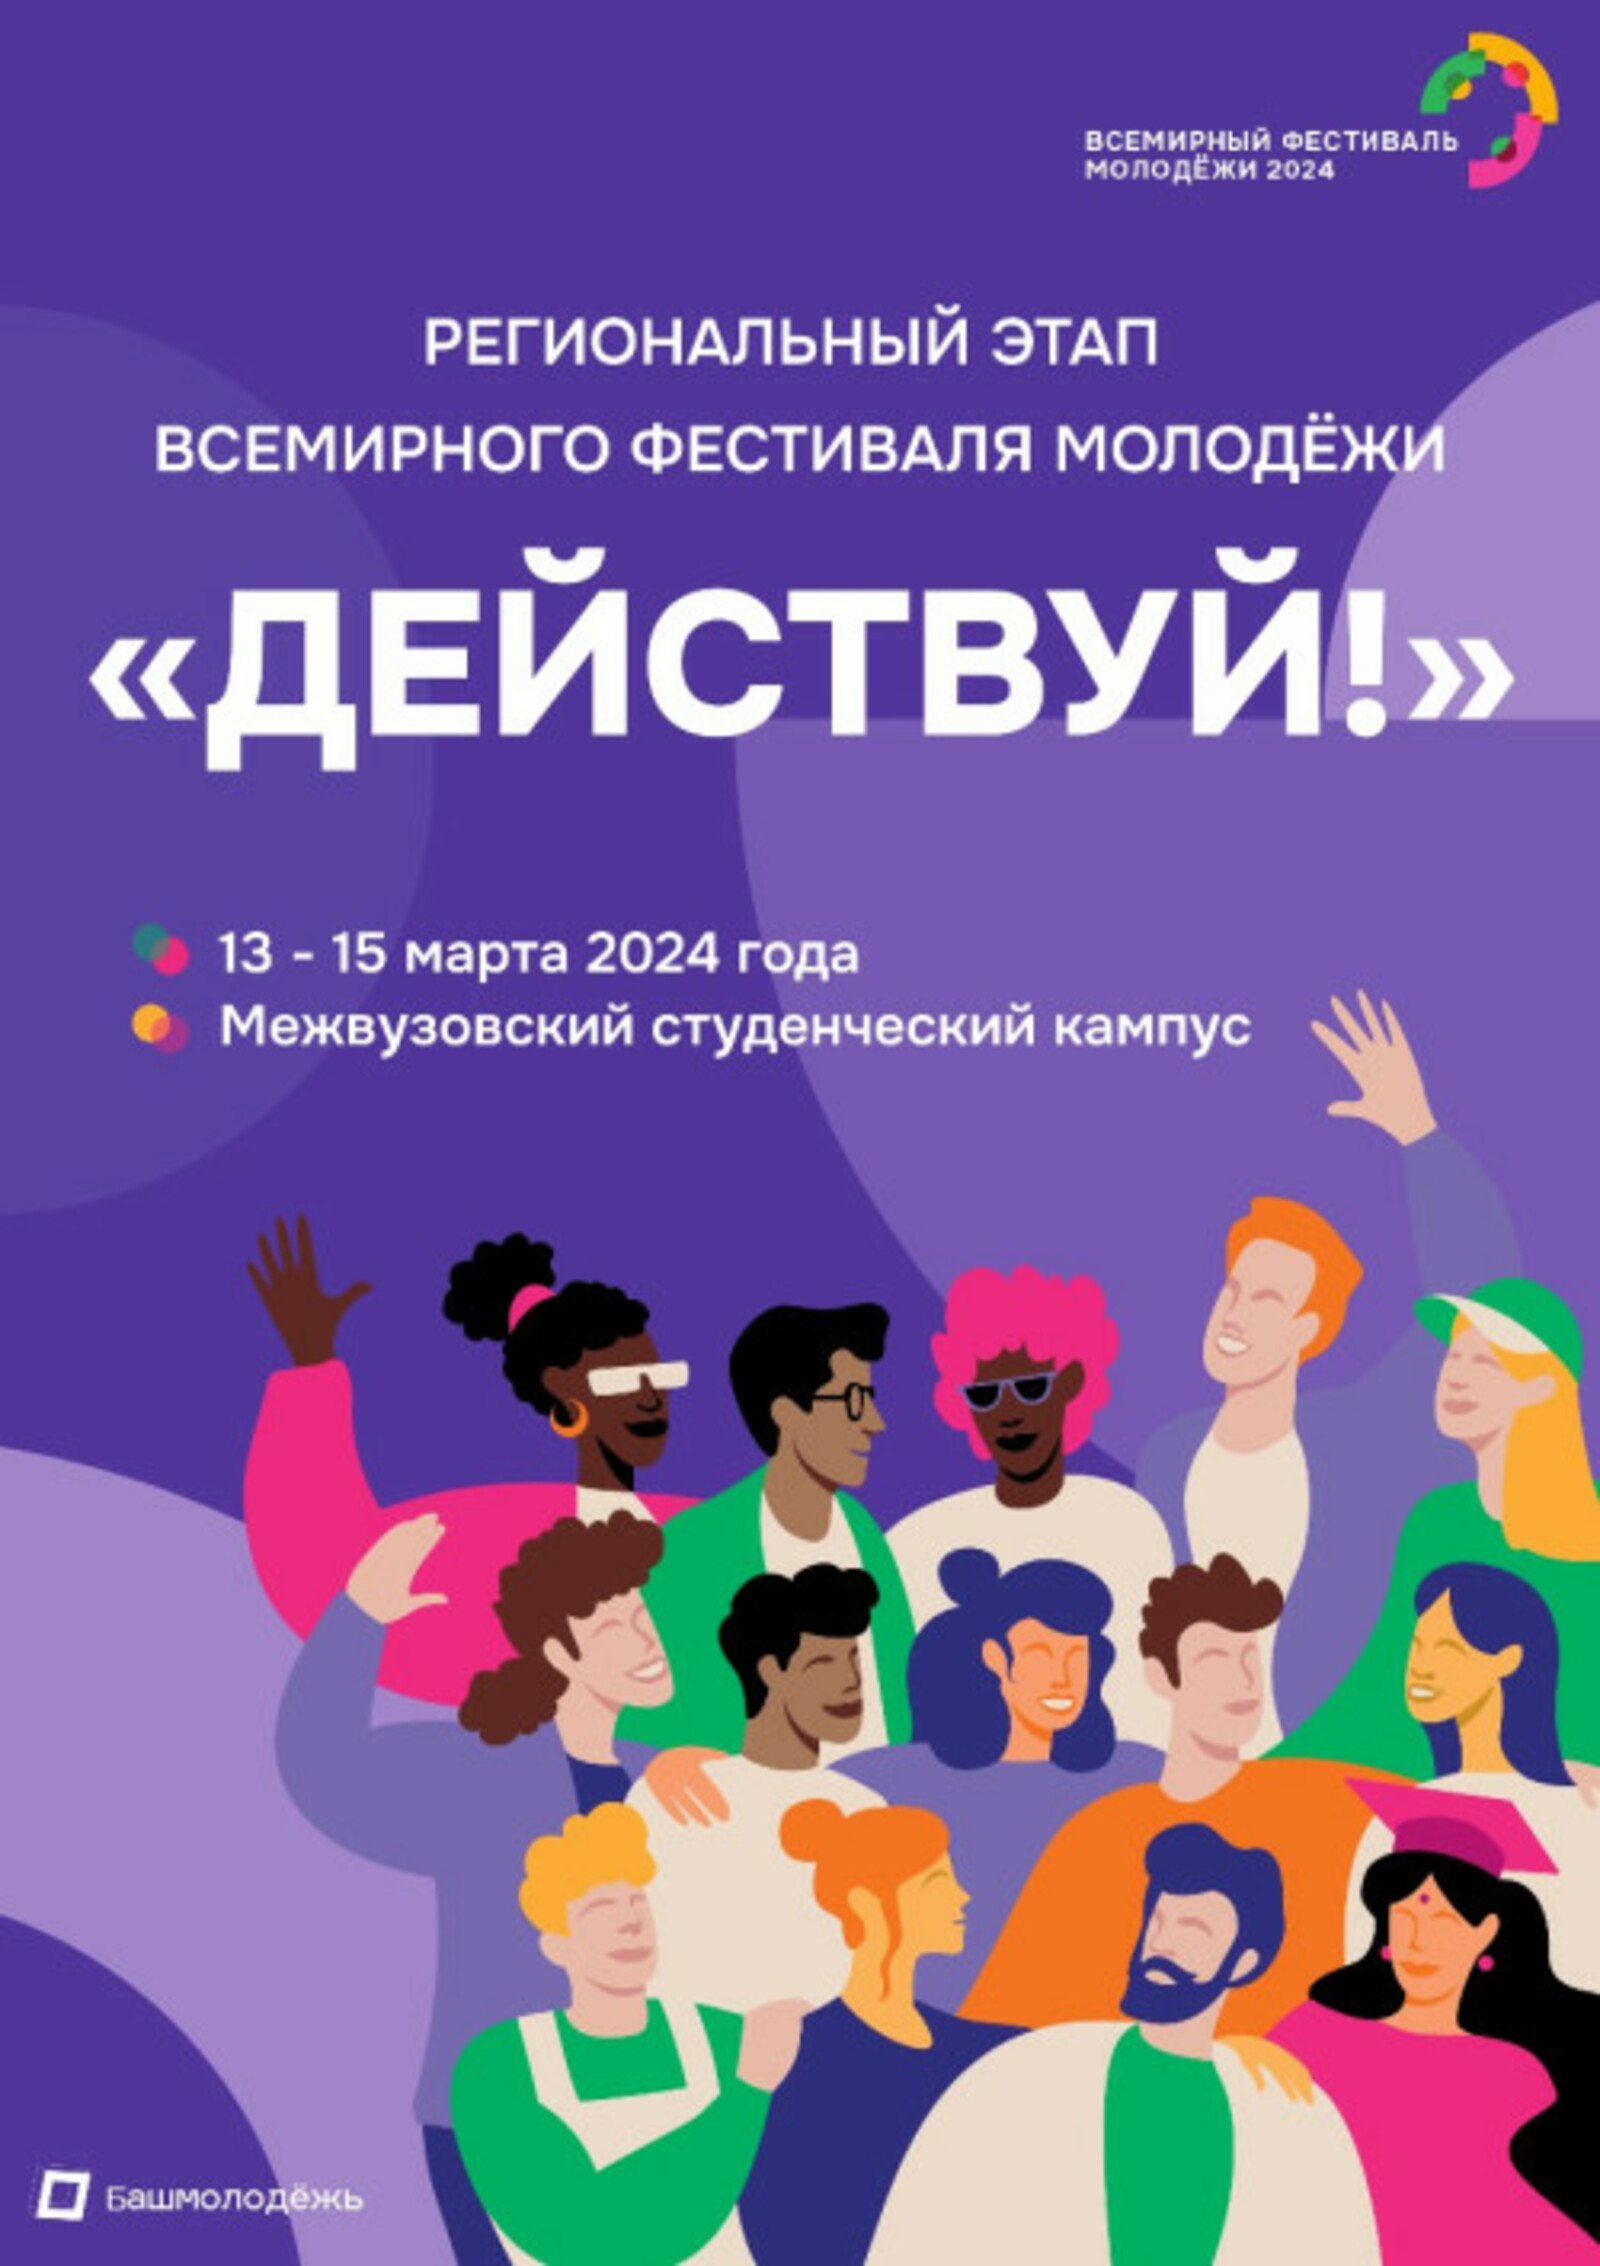 В Межвузовском кампусе Уфы пройдёт региональный этап Всемирного фестиваля молодежи